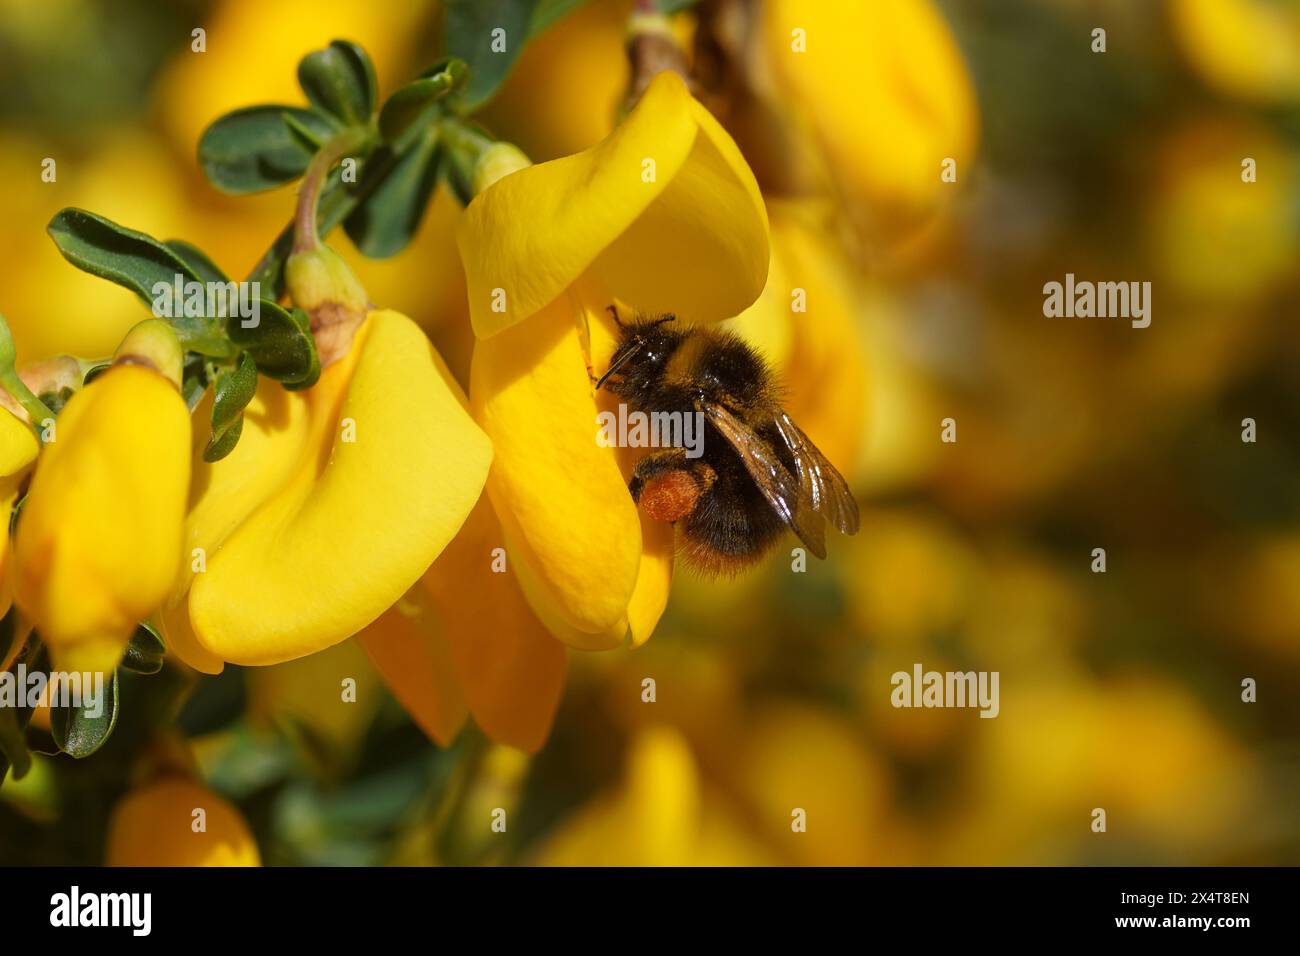 Nahaufnahme der frühen Hummel (Bombus pratorum), Familie Apidae an gelben Blüten des gewöhnlichen Ginsens Cytisus scoparius (Syn. Sarothamnus scoparius). Stockfoto